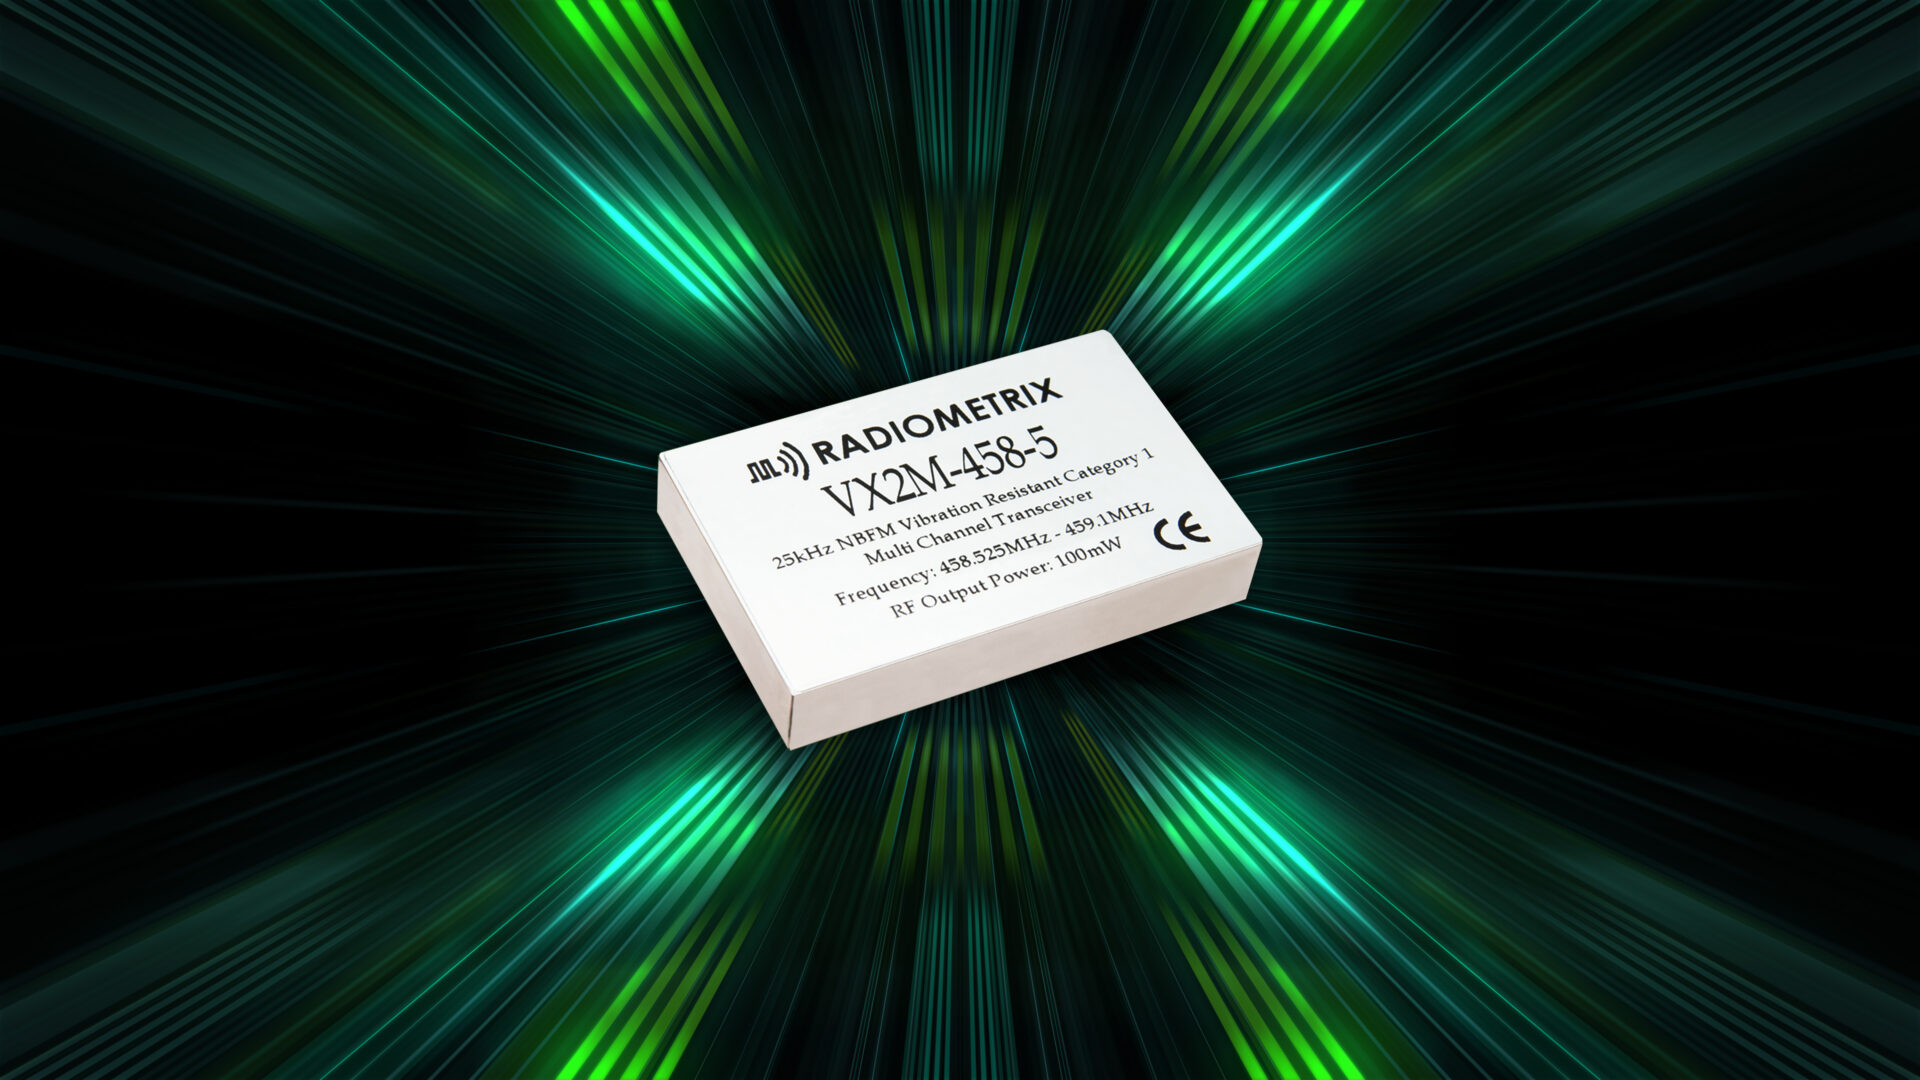 VX2M Vibration resistant transceiver module